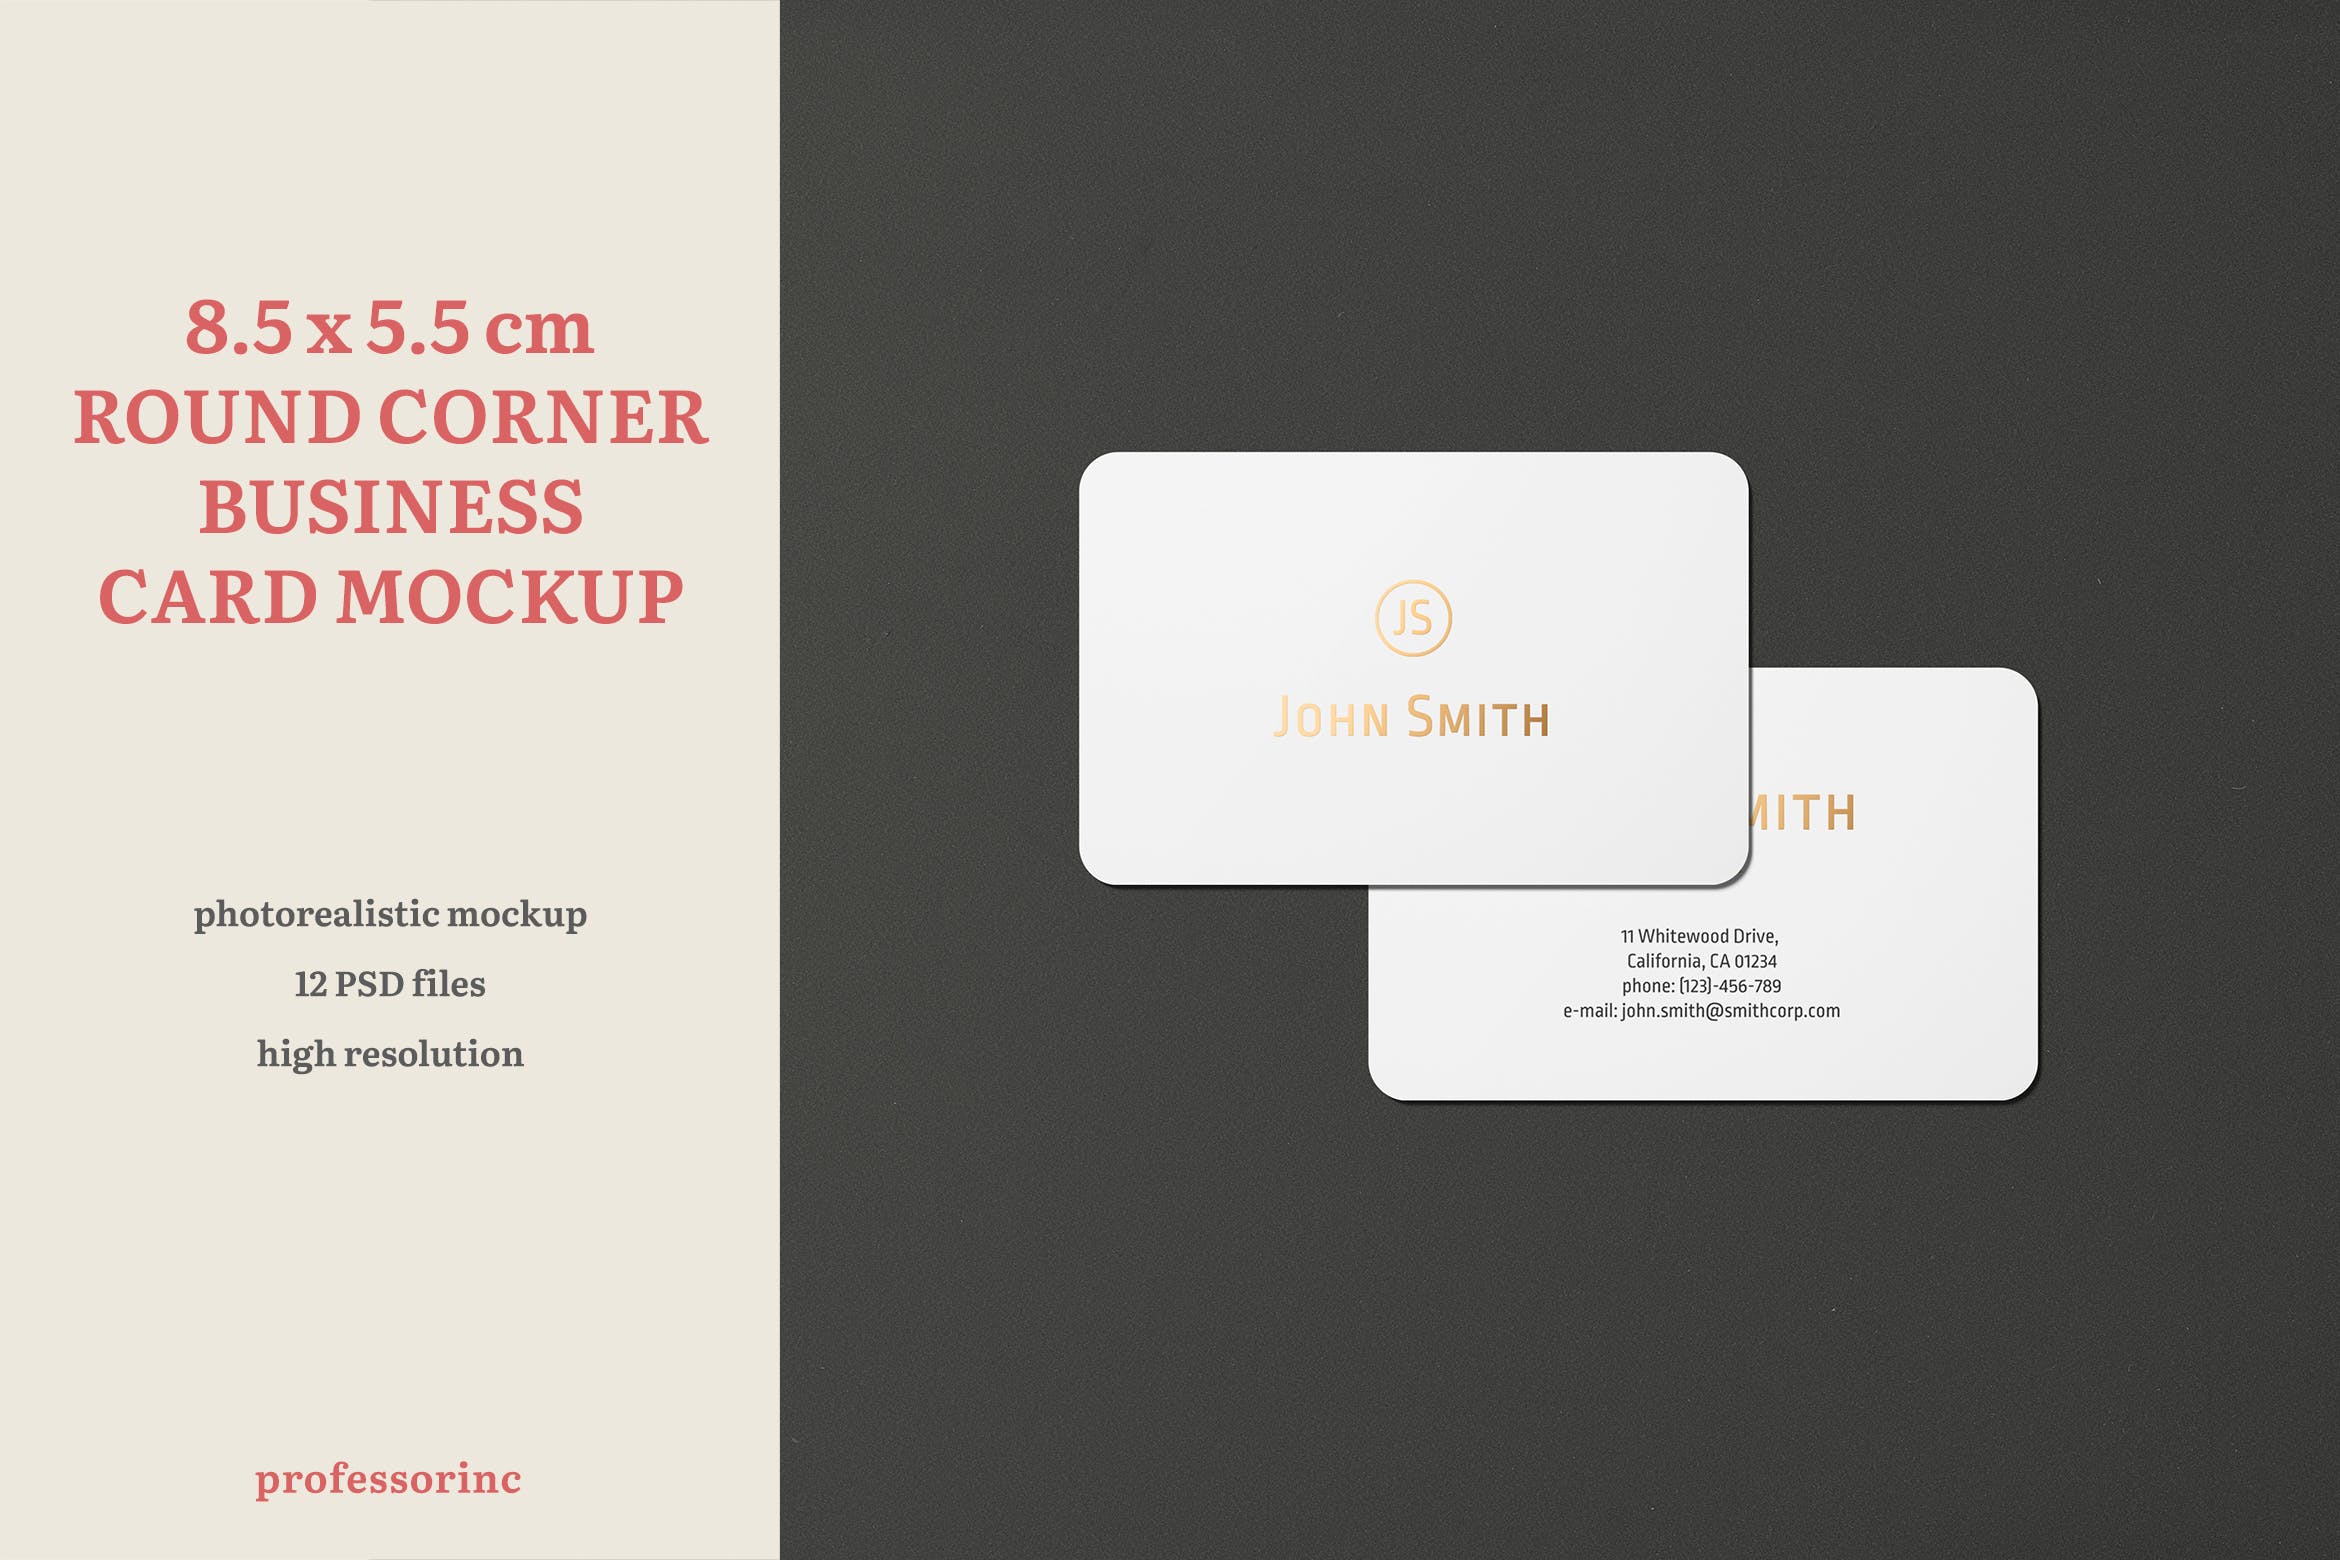 高端圆角企业名片设计图蚂蚁素材精选套件 8.5×5.5 Landscape Business Card Mockup插图